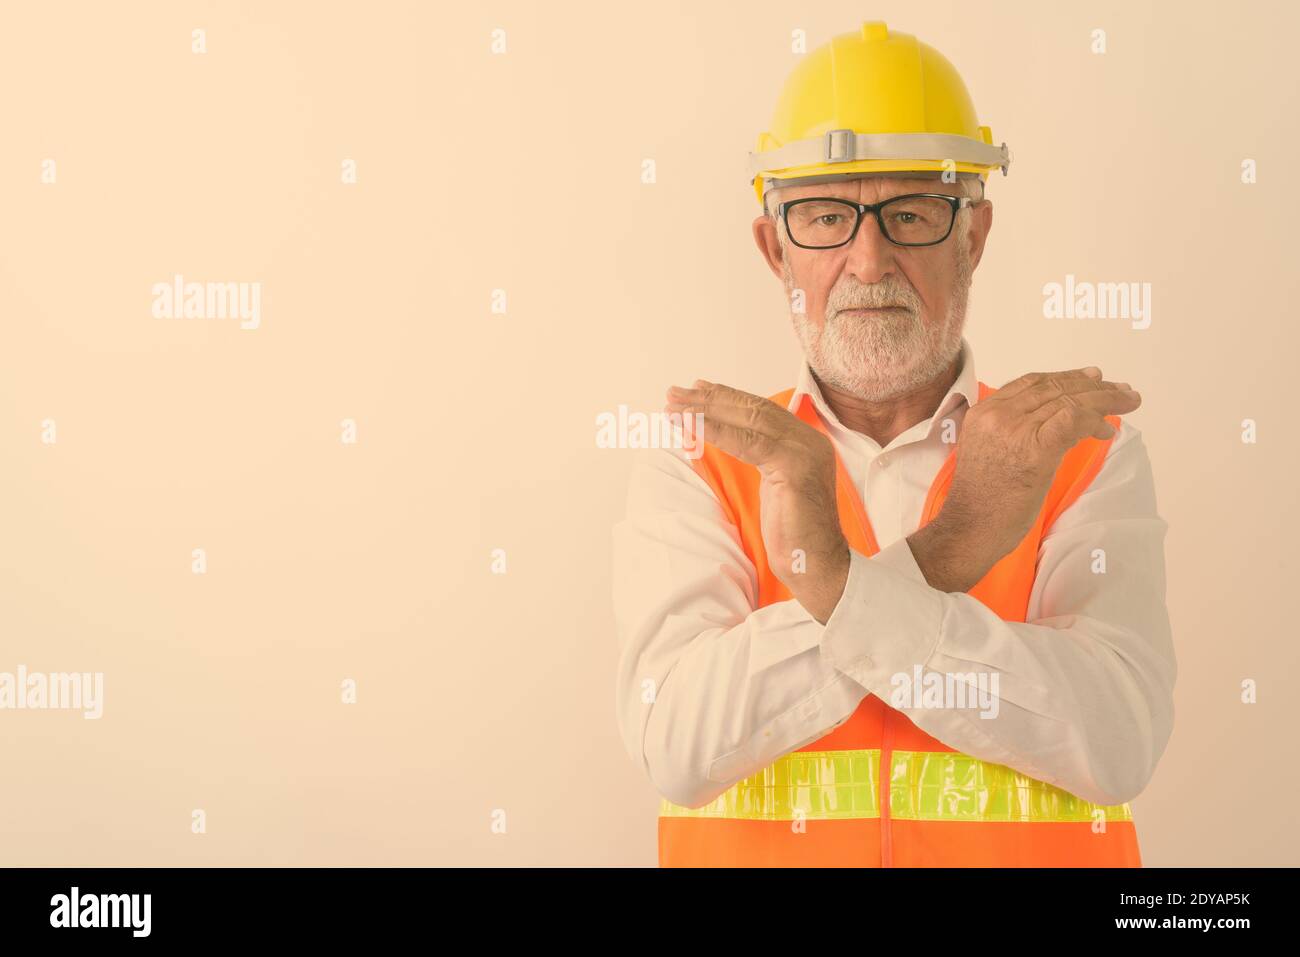 Studioaufnahme eines gutaussehenden älteren bärtigen Bauarbeiters Halten Sie die Handbewegung mit beiden Händen an, während Sie eine Brille tragen Weiß Stockfoto